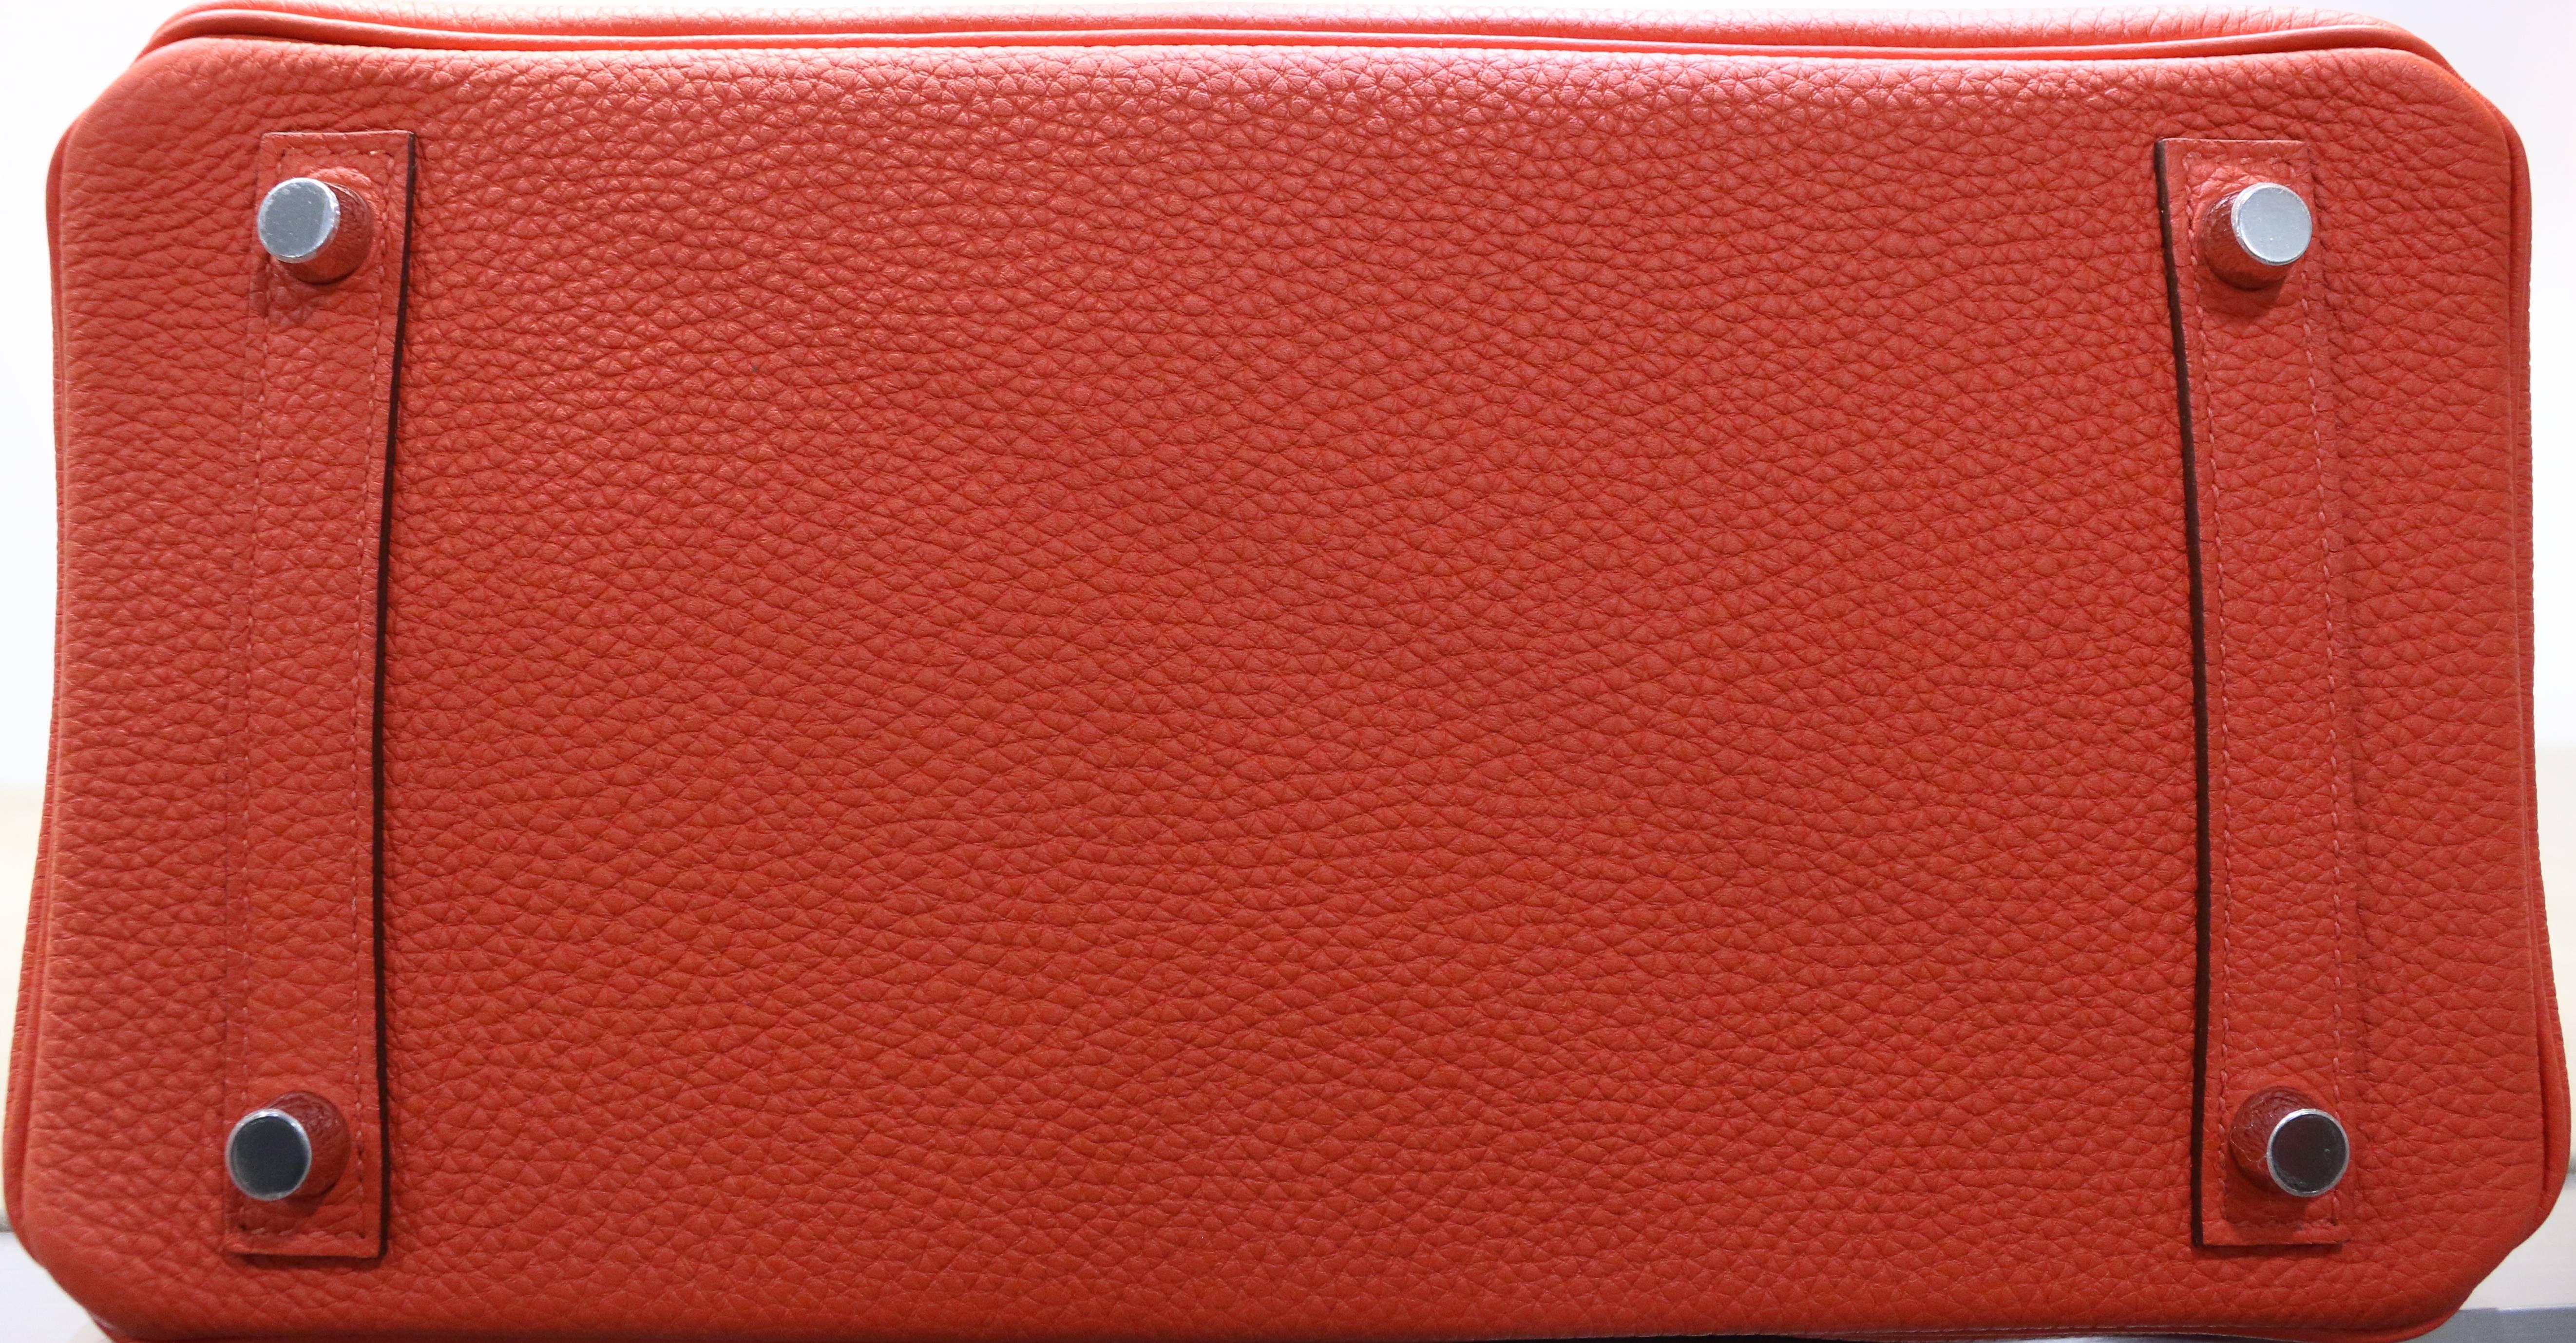 Hermes Birkin Red 30cm Togo Leather Bag 4